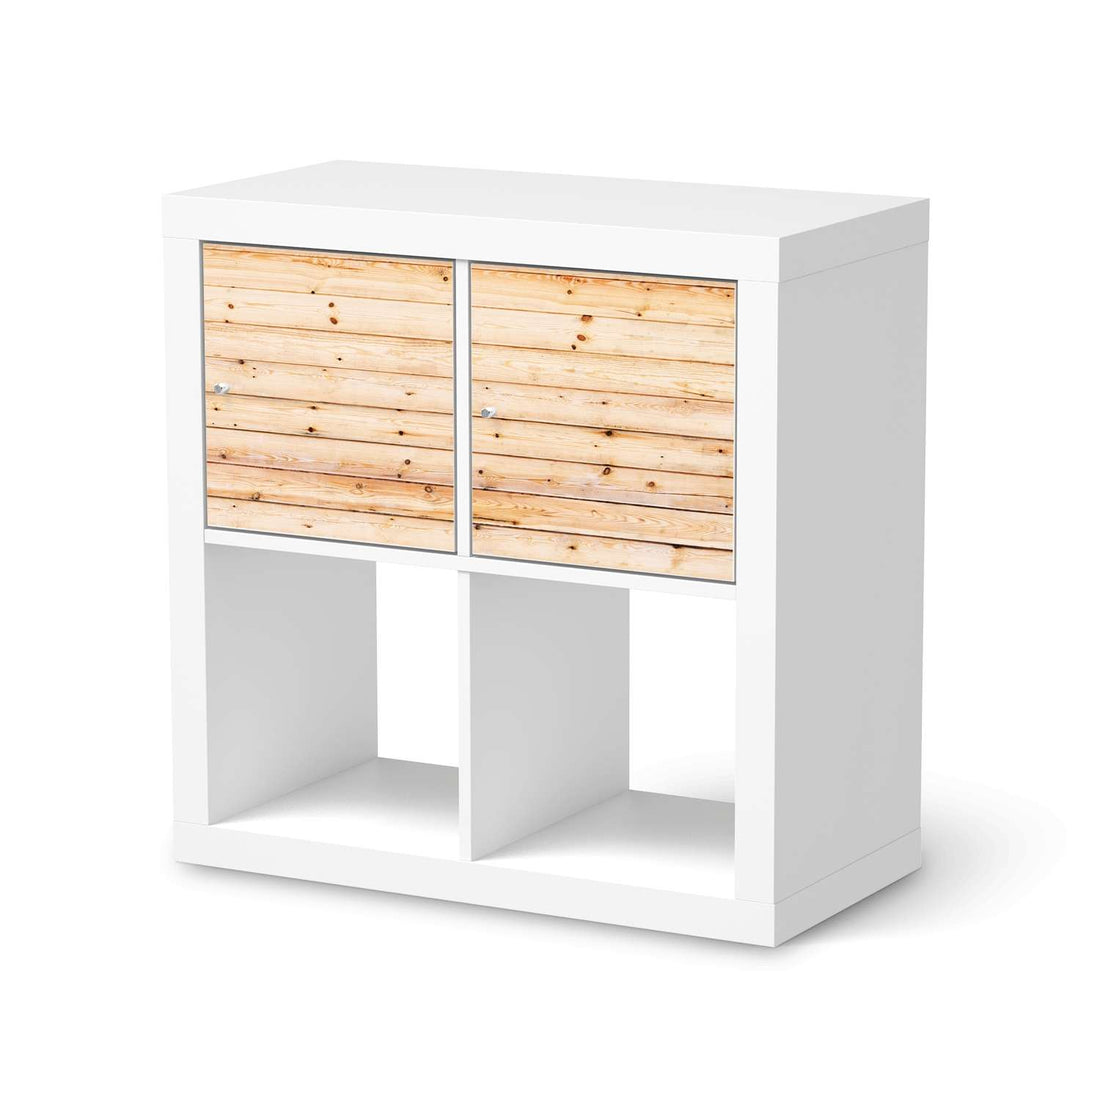 Möbelfolie Bright Planks - IKEA Kallax Regal 2 Türen Quer  - weiss